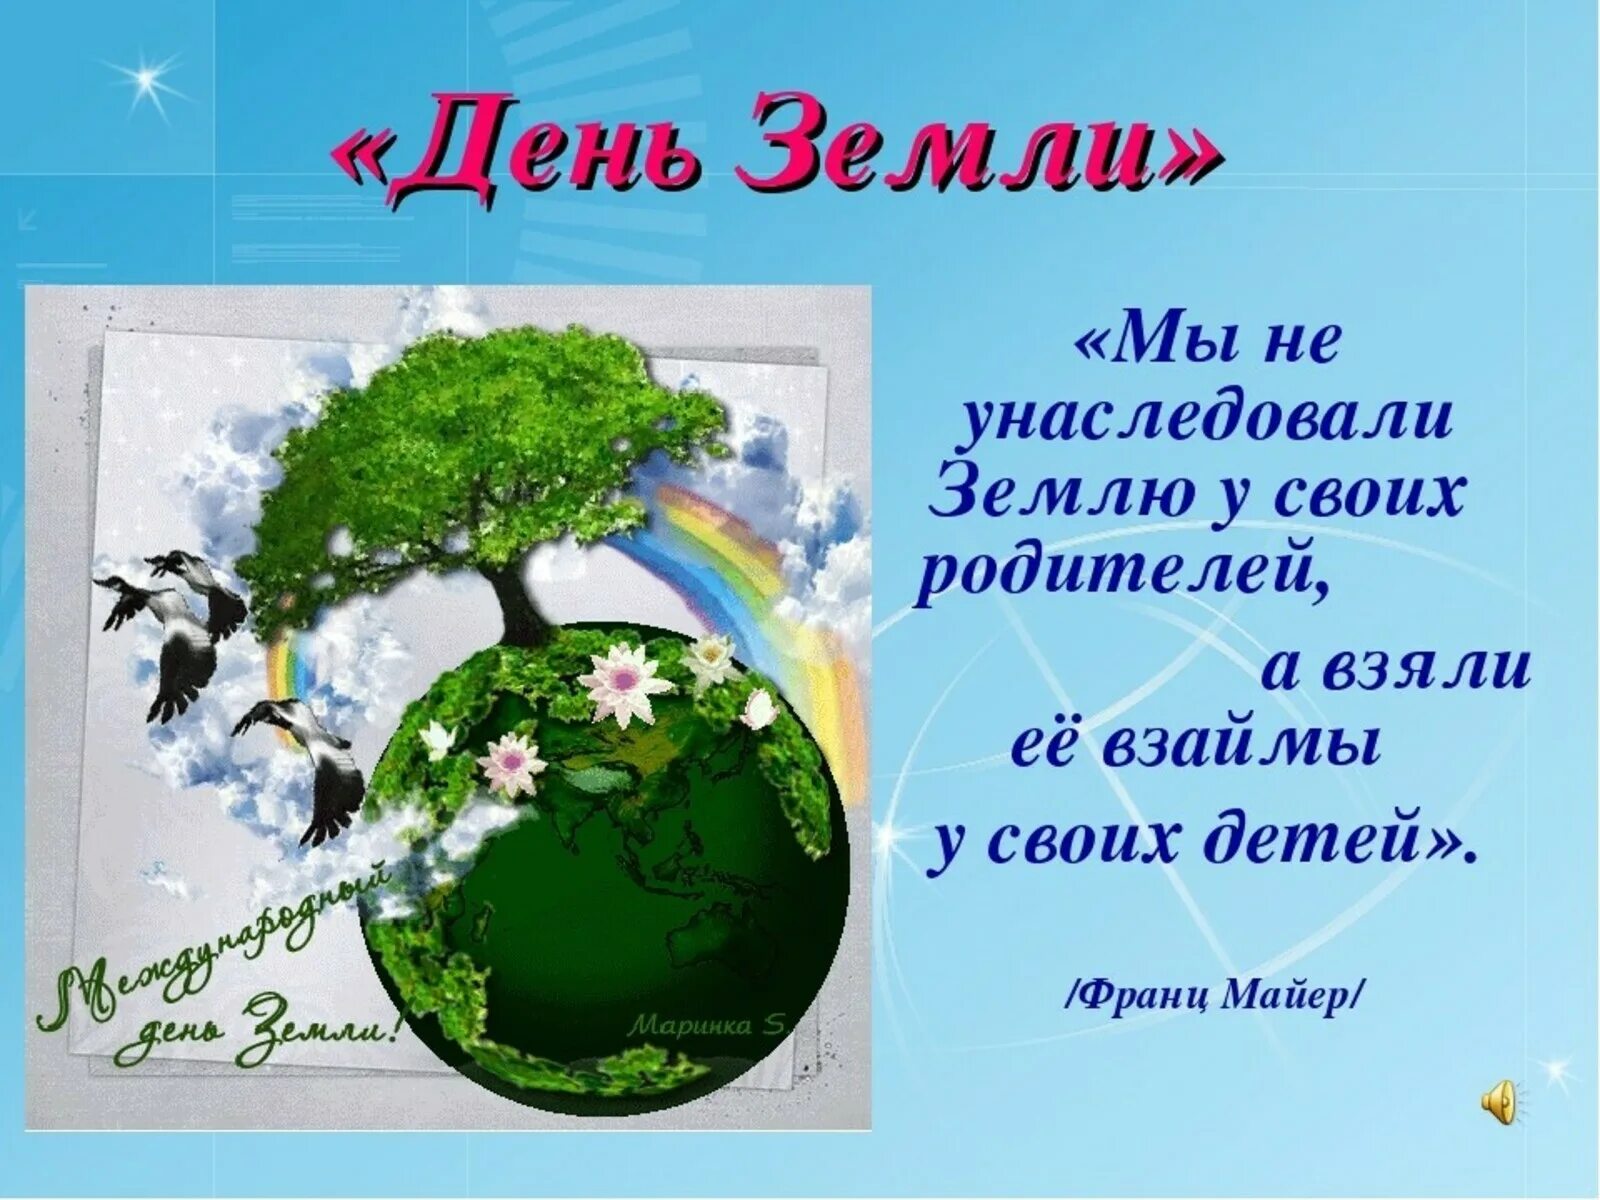 22 апреля день земли мероприятия. День земли. Всемирный день земли. С днем земли поздравления. День земли открытка.